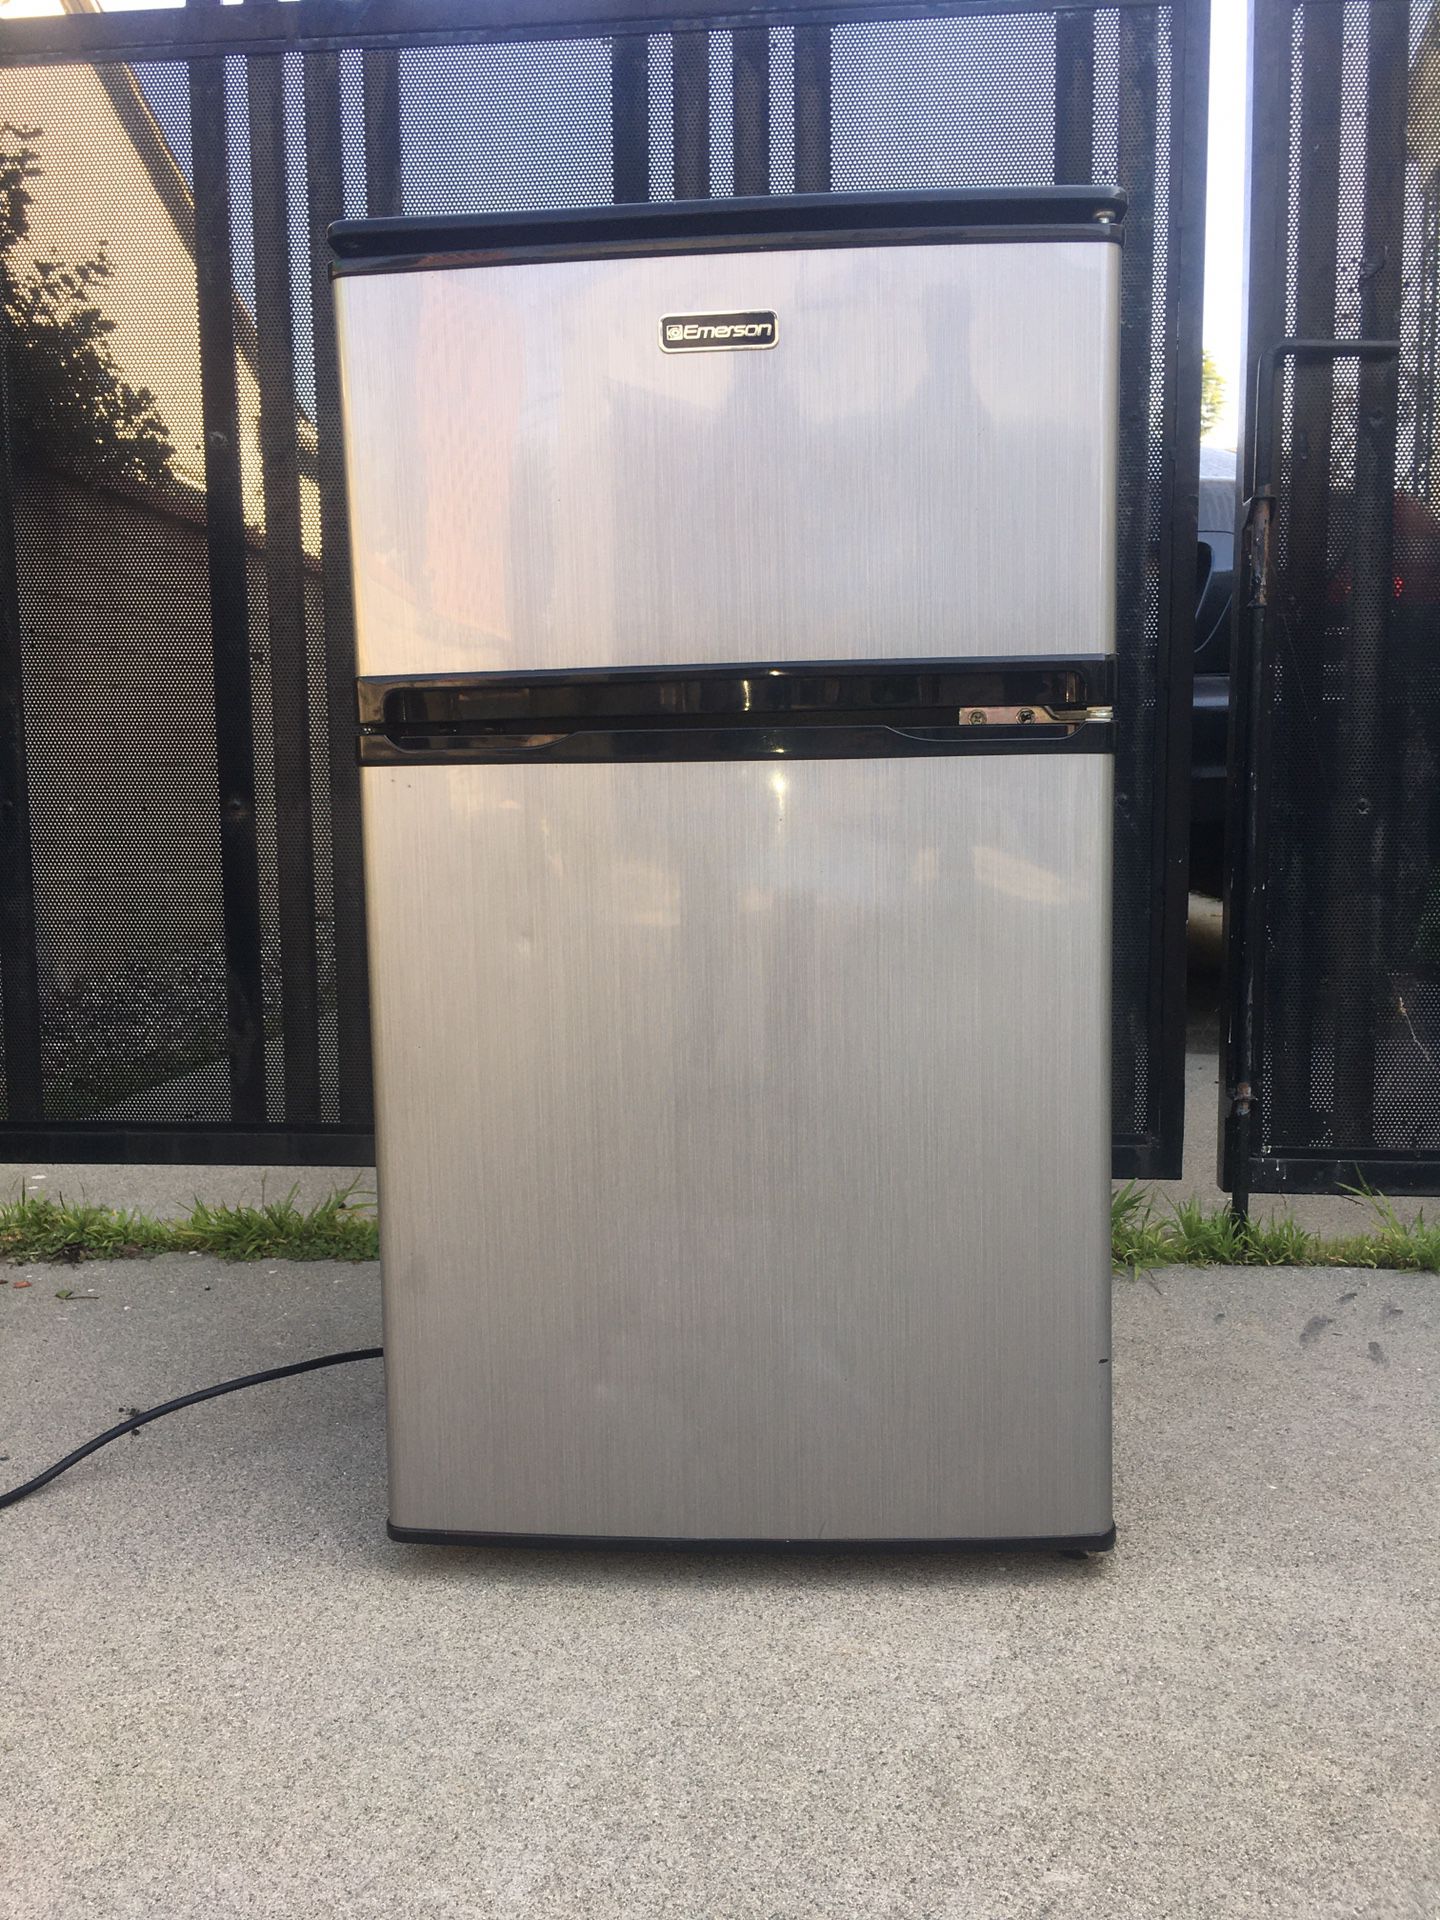 Emerson Compact Refrigerator/Freezer